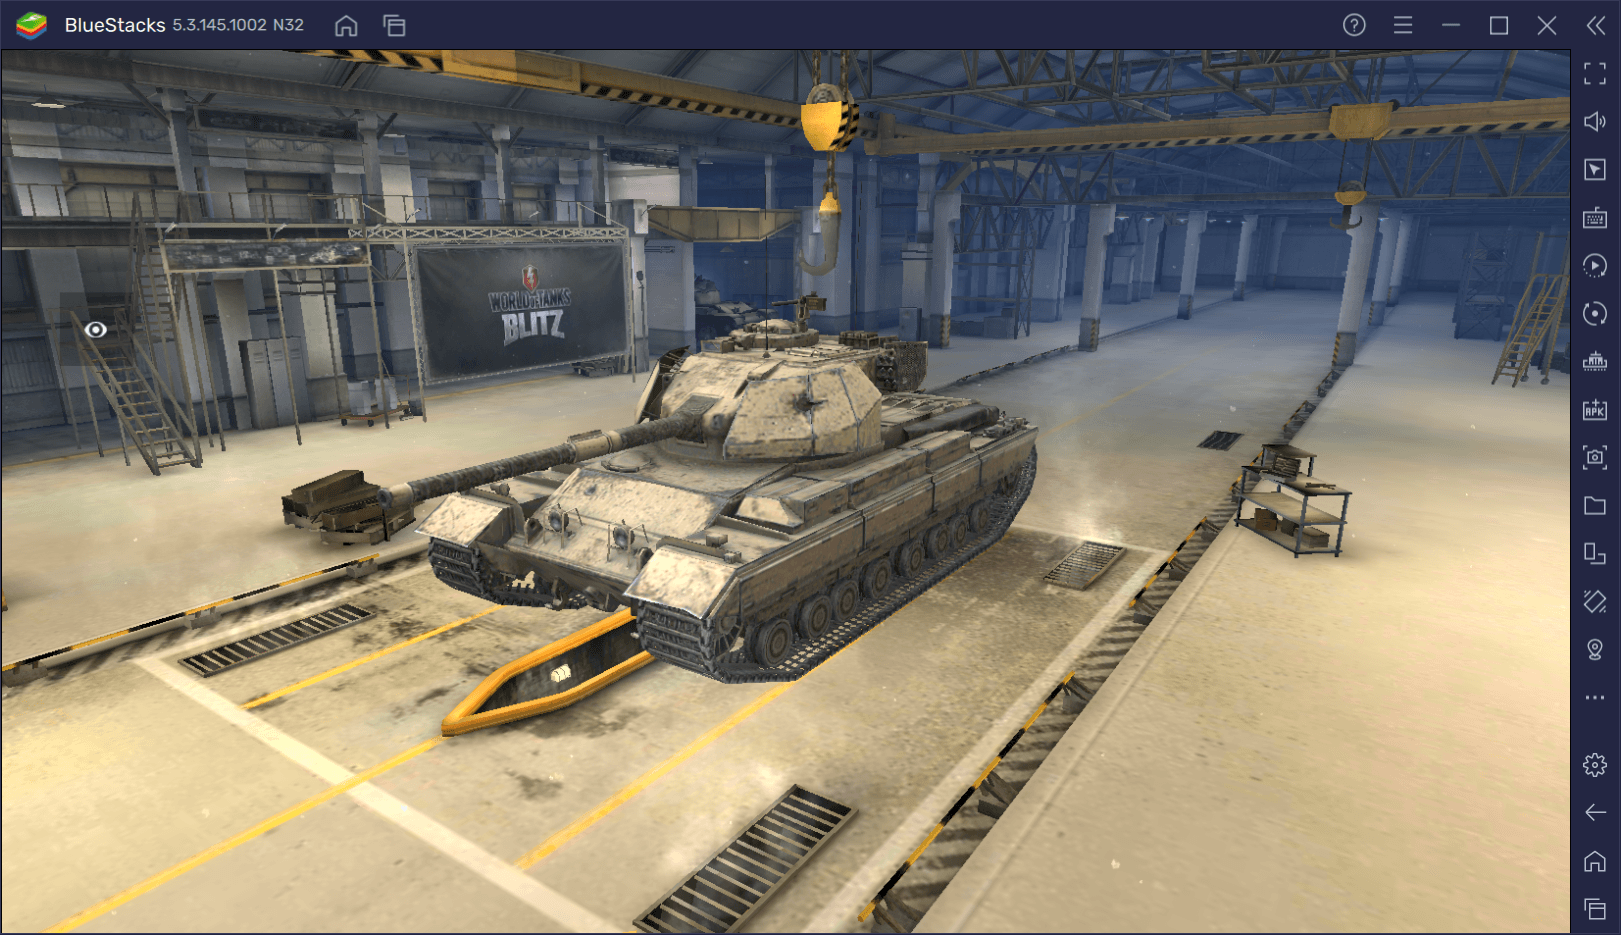 Гайд по премиумному танку Caernarvon Action X в World of Tanks Blitz. Обзор характеристик, достоинств и тактик игры